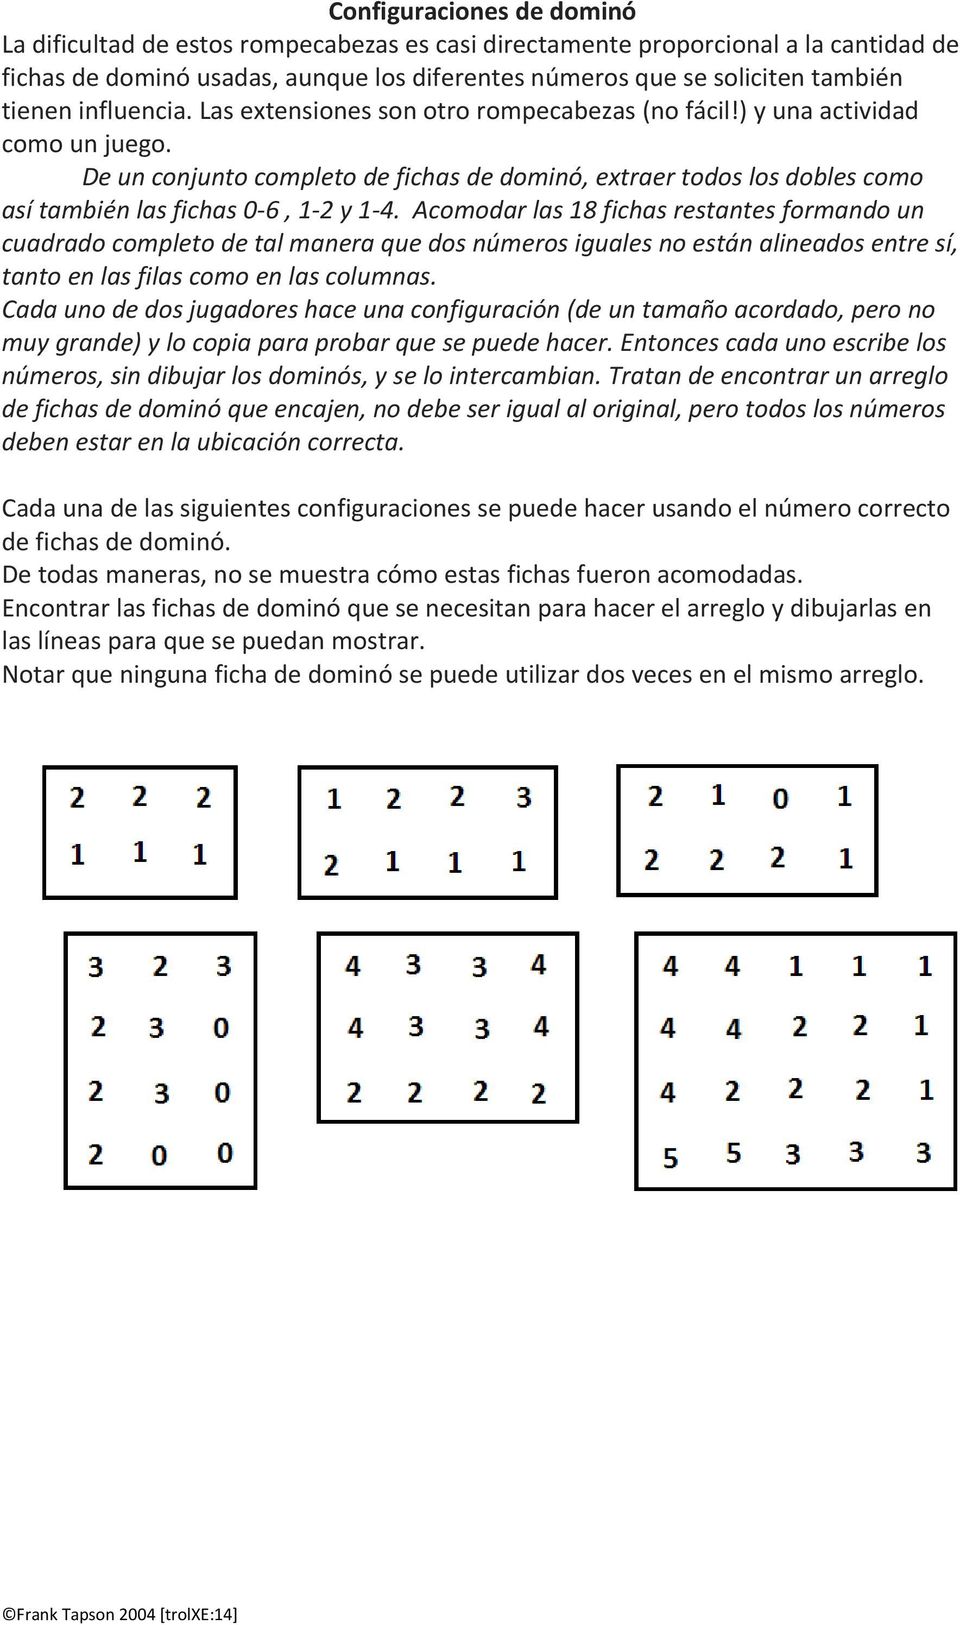 De un conjunto completo de fichas de dominó, extraer todos los dobles como así también las fichas 0-6, 1-2 y 1-4.